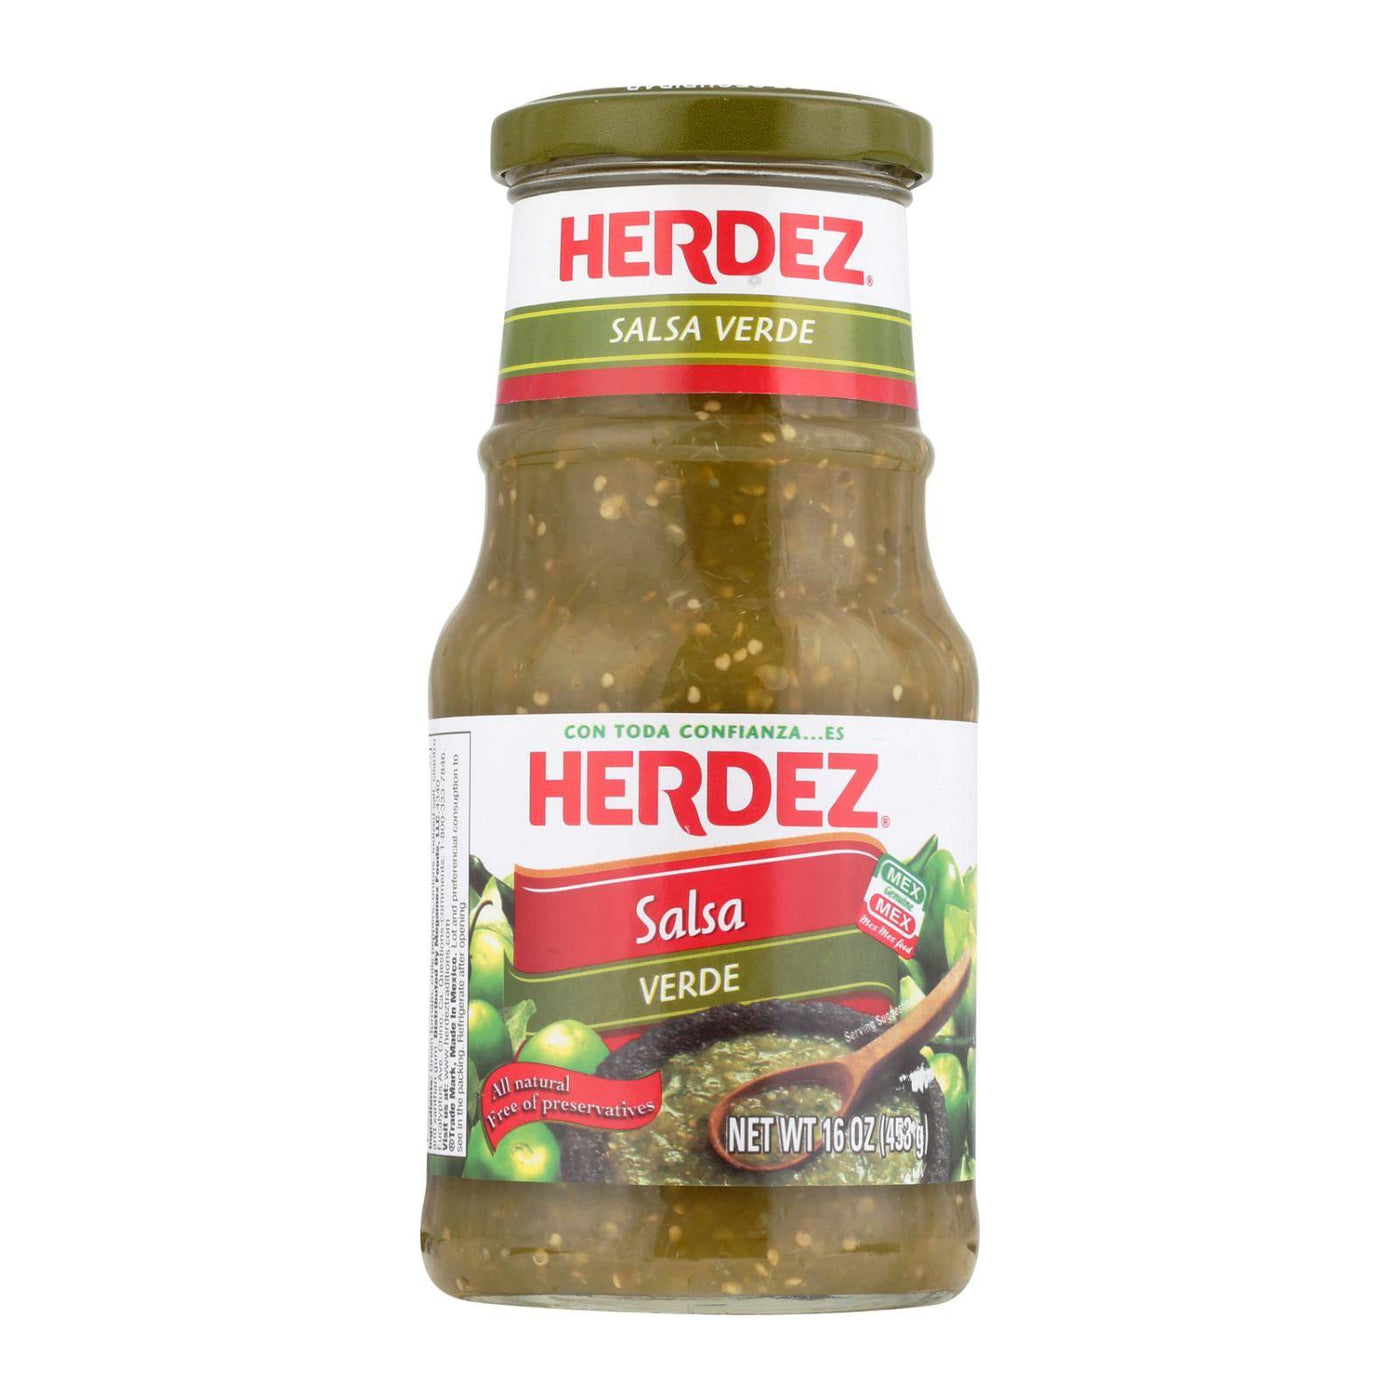 Buy Herdez Salsa - Verde - Case Of 12 - 16 Oz.  at OnlyNaturals.us